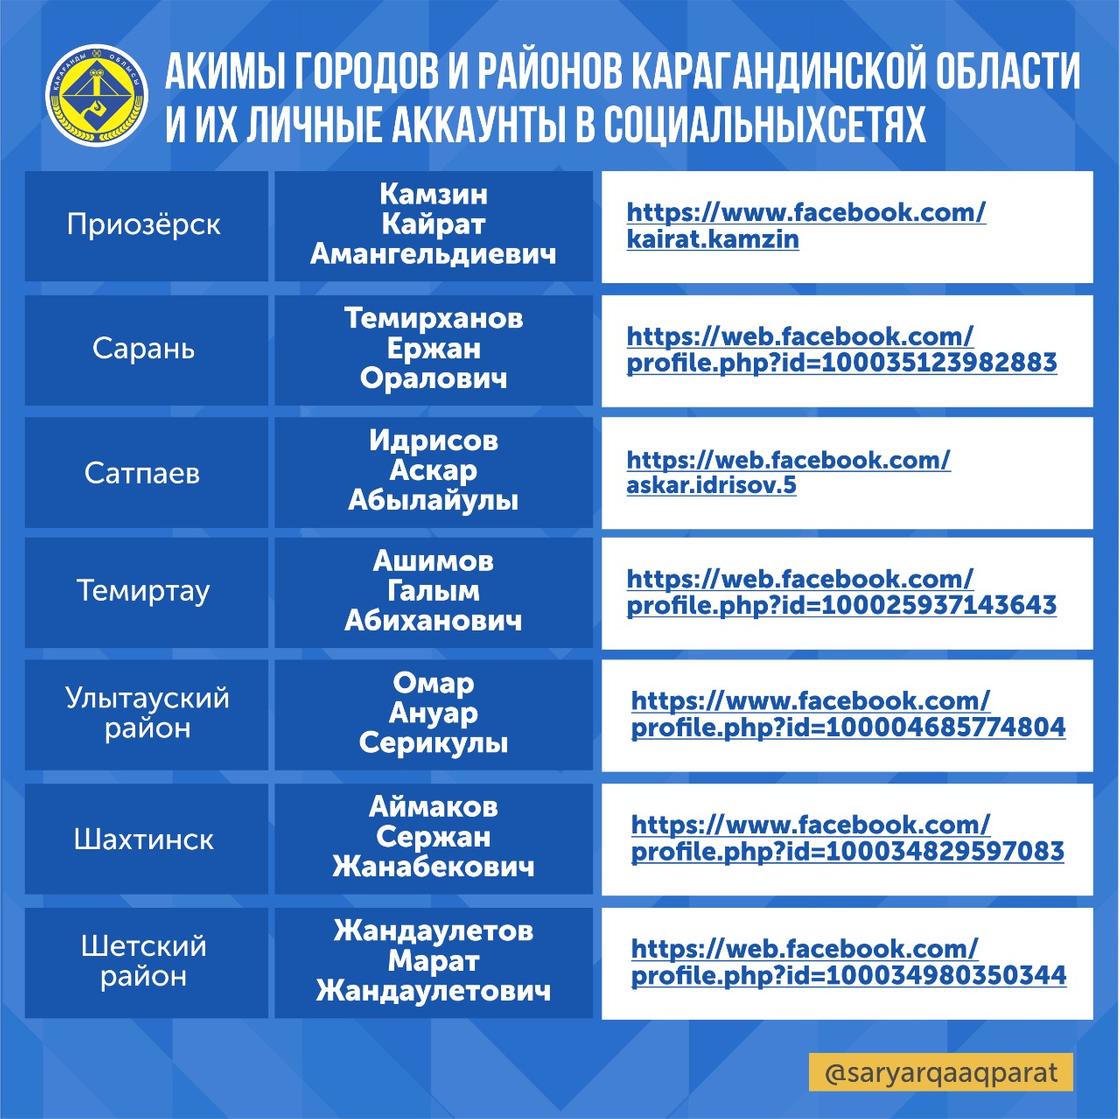 Как связаться с акимами Карагандинской области в соцсетях